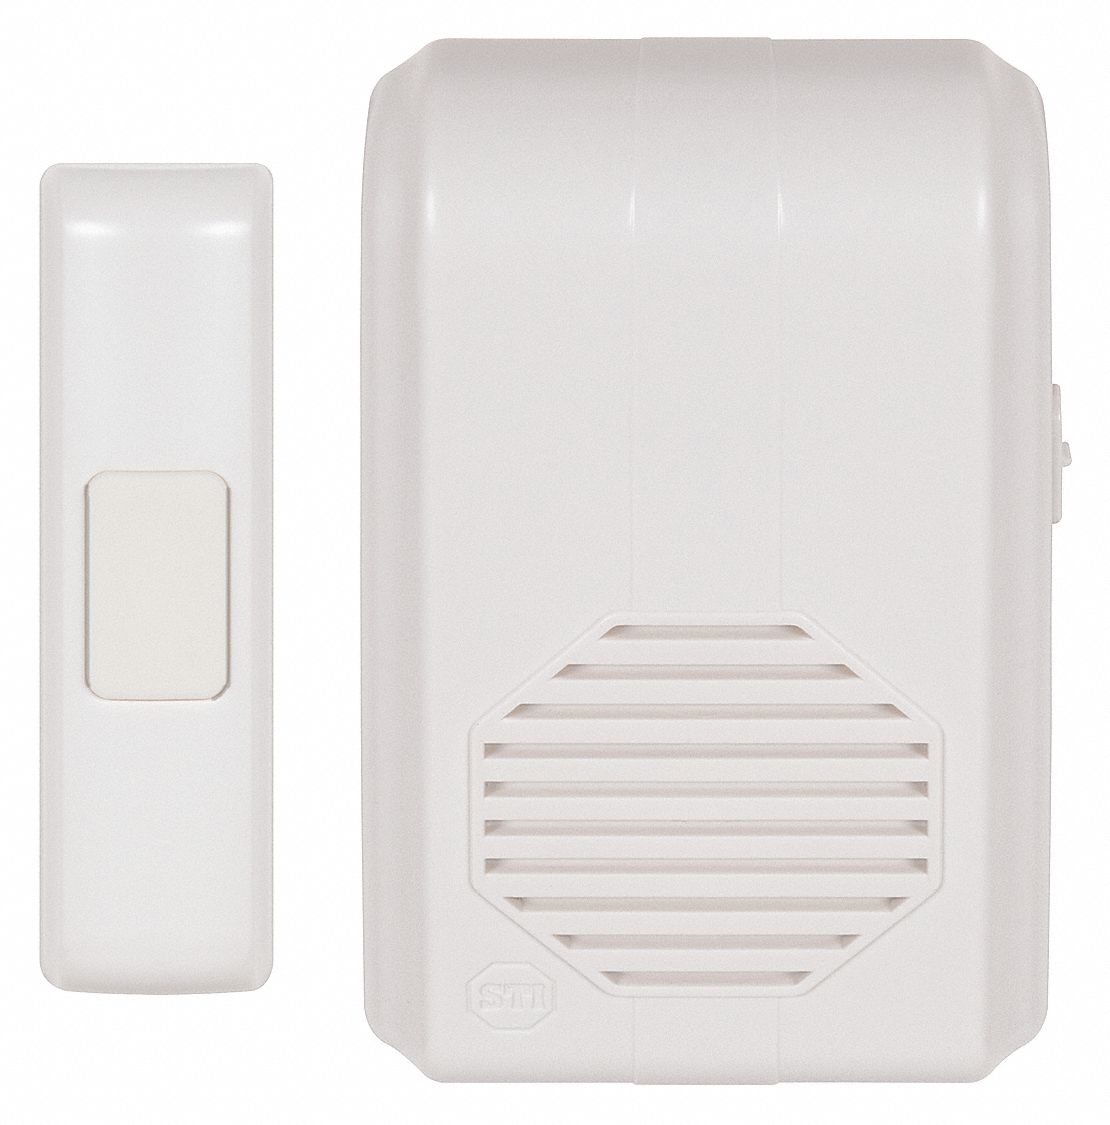 400m Wireless Doorbell Chime Door Magnetic Security Alarm Sensor w/ Receiver Kit 